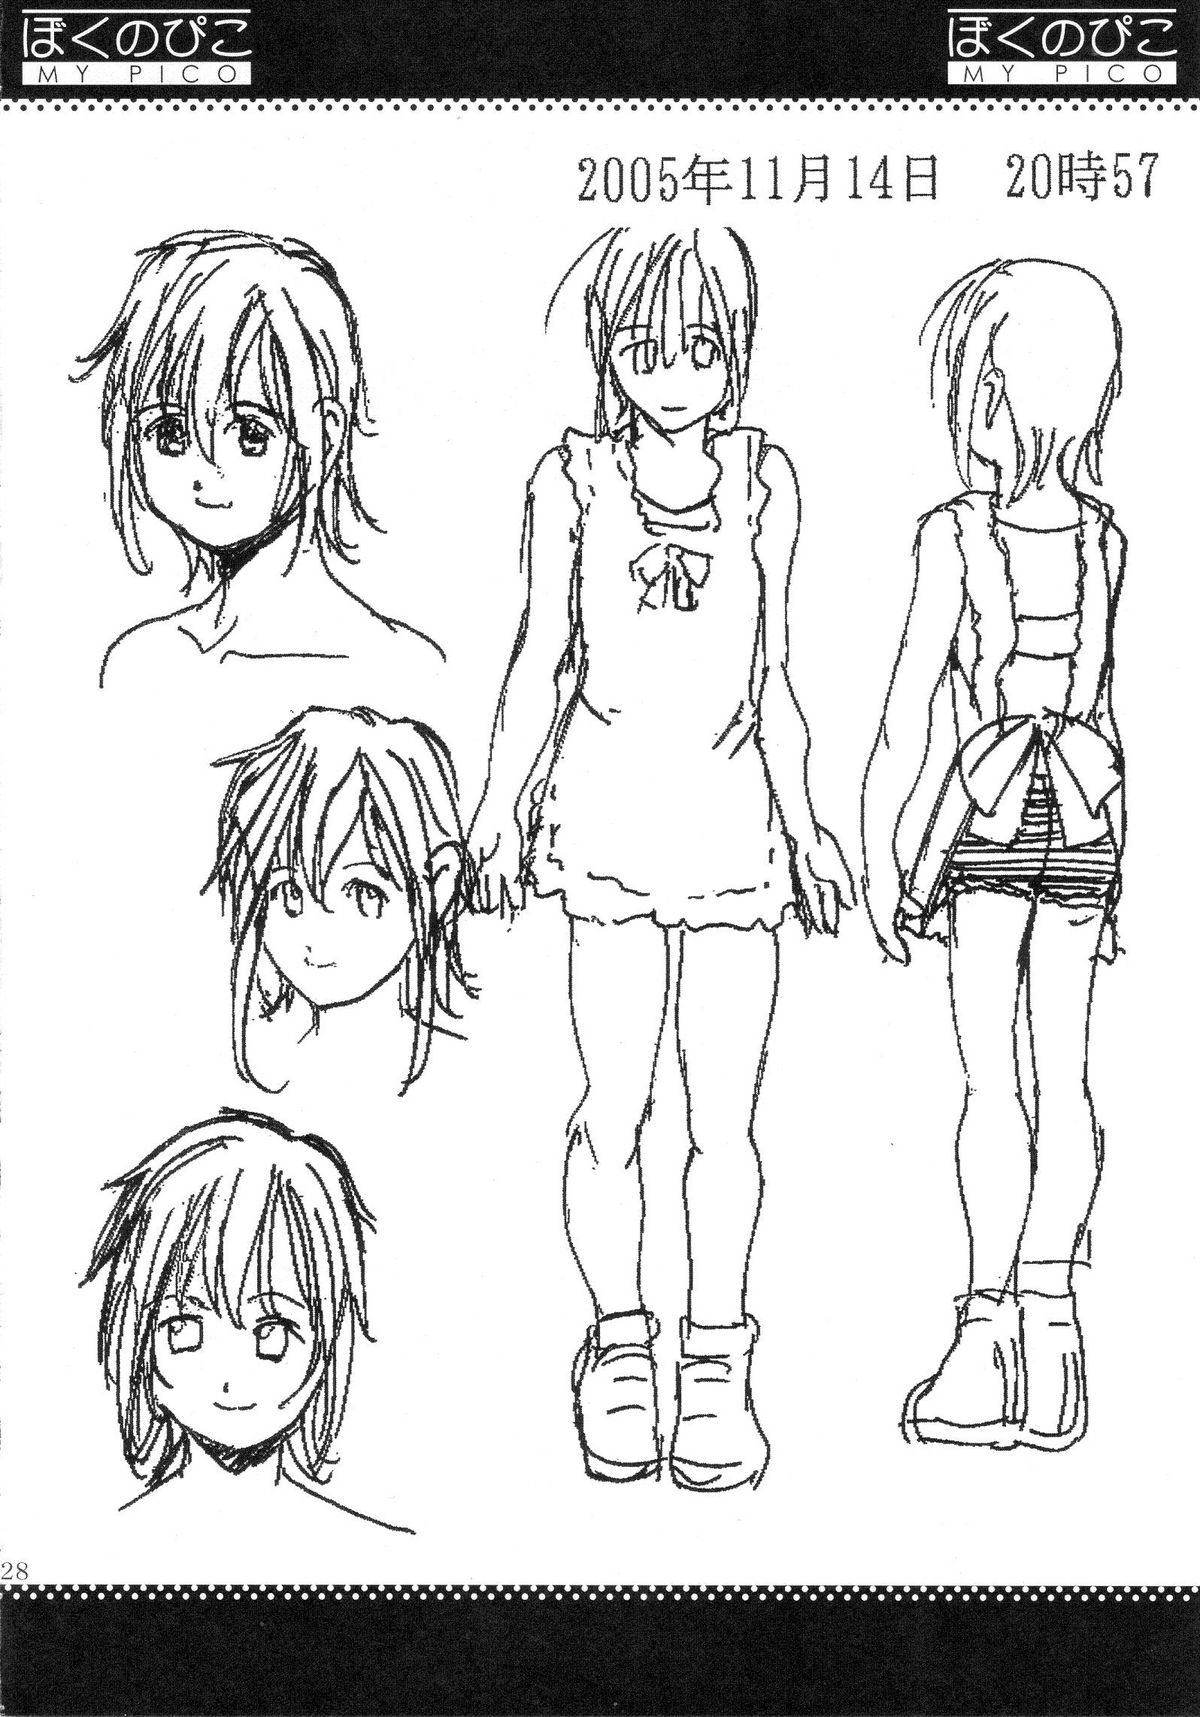 (COMIC1) [Saigado] Boku no Pico Comic + Koushiki Character Genanshuu (Boku no Pico) page 26 full